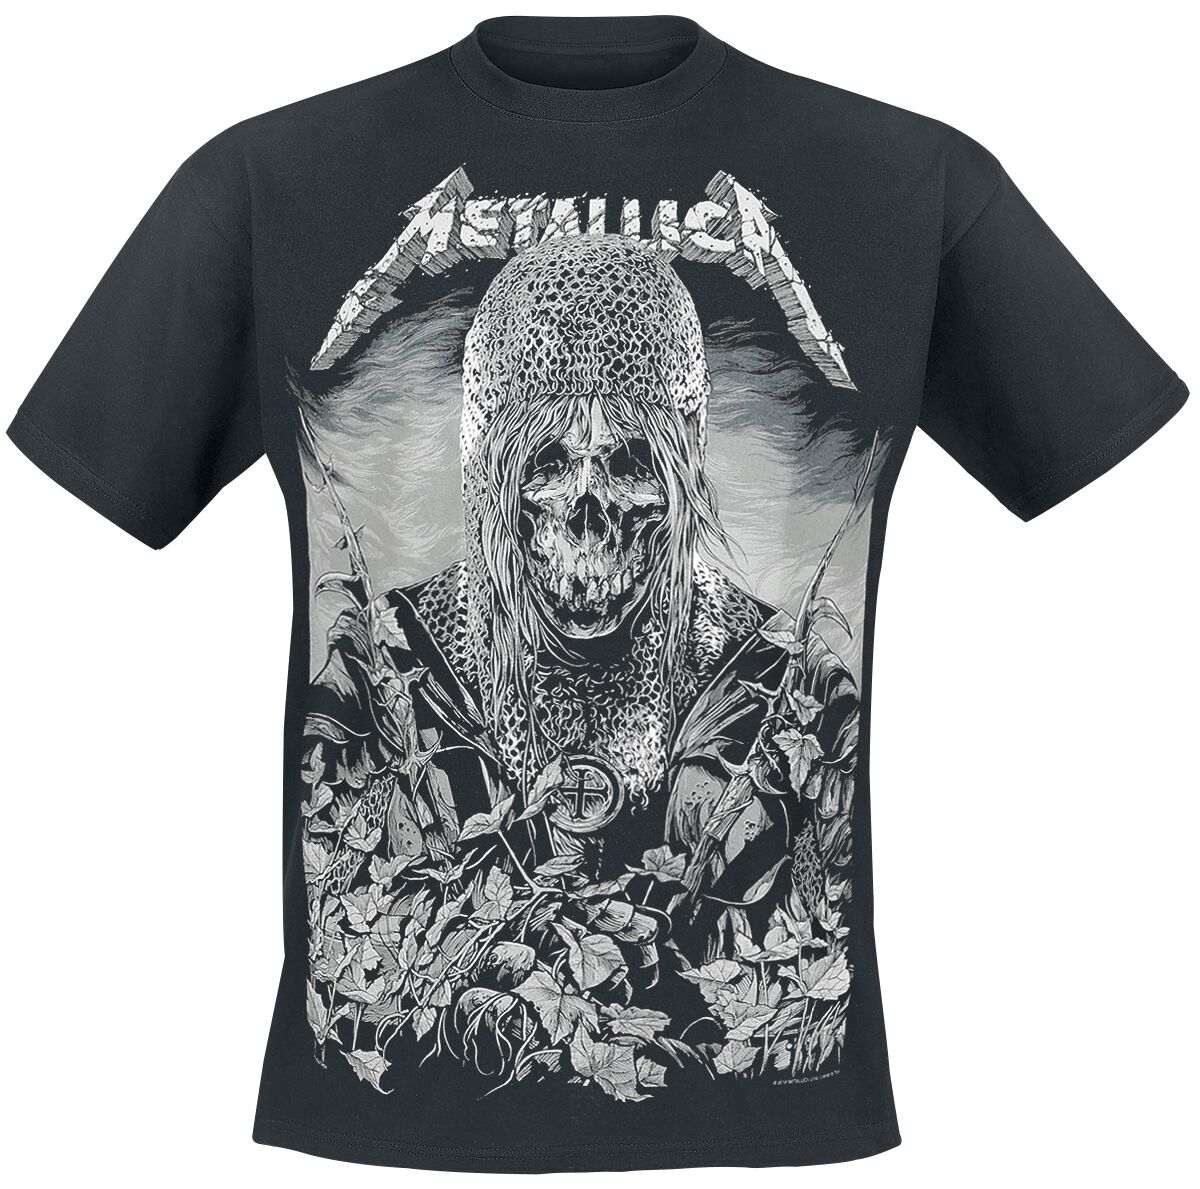 Metallica T-Shirt - Templar - S bis 3XL - für Männer - Größe 3XL - schwarz  - Lizenziertes Merchandise!